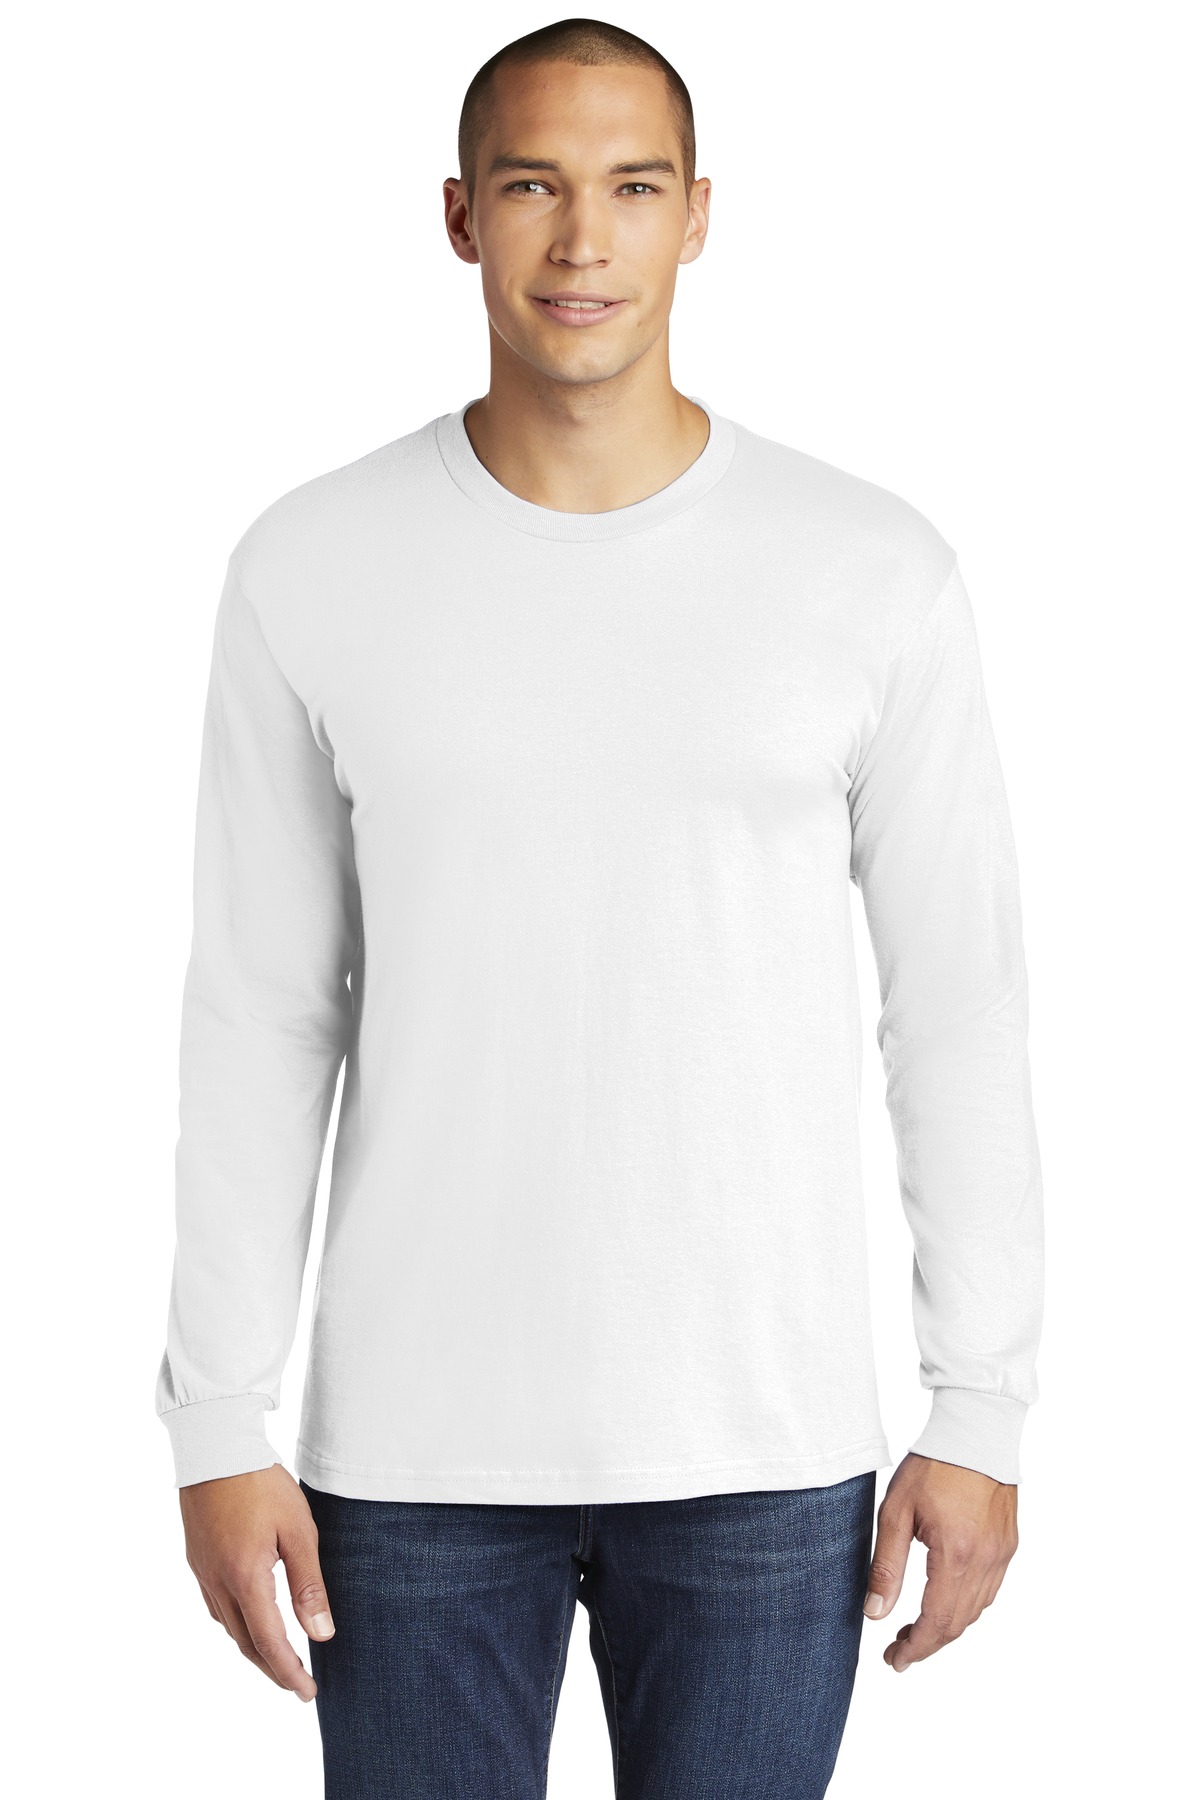 Gildan Hammer Long Sleeve T-Shirt-Gildan